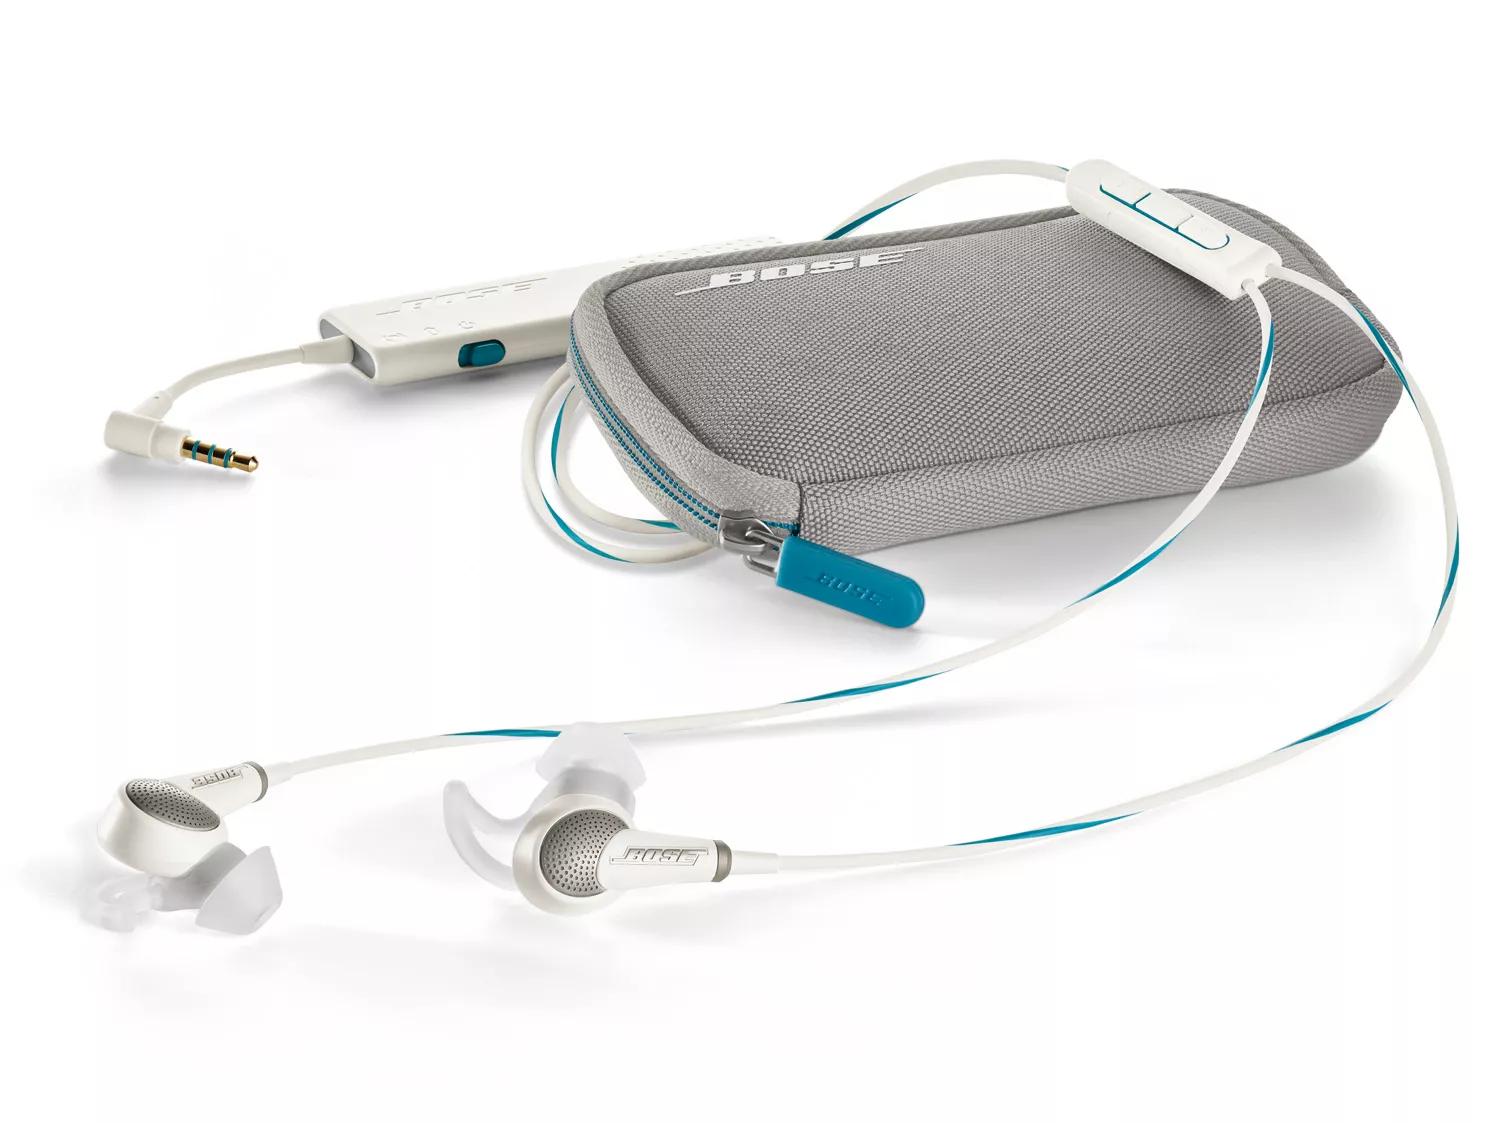 Bose QuietComfort 20 Headphones